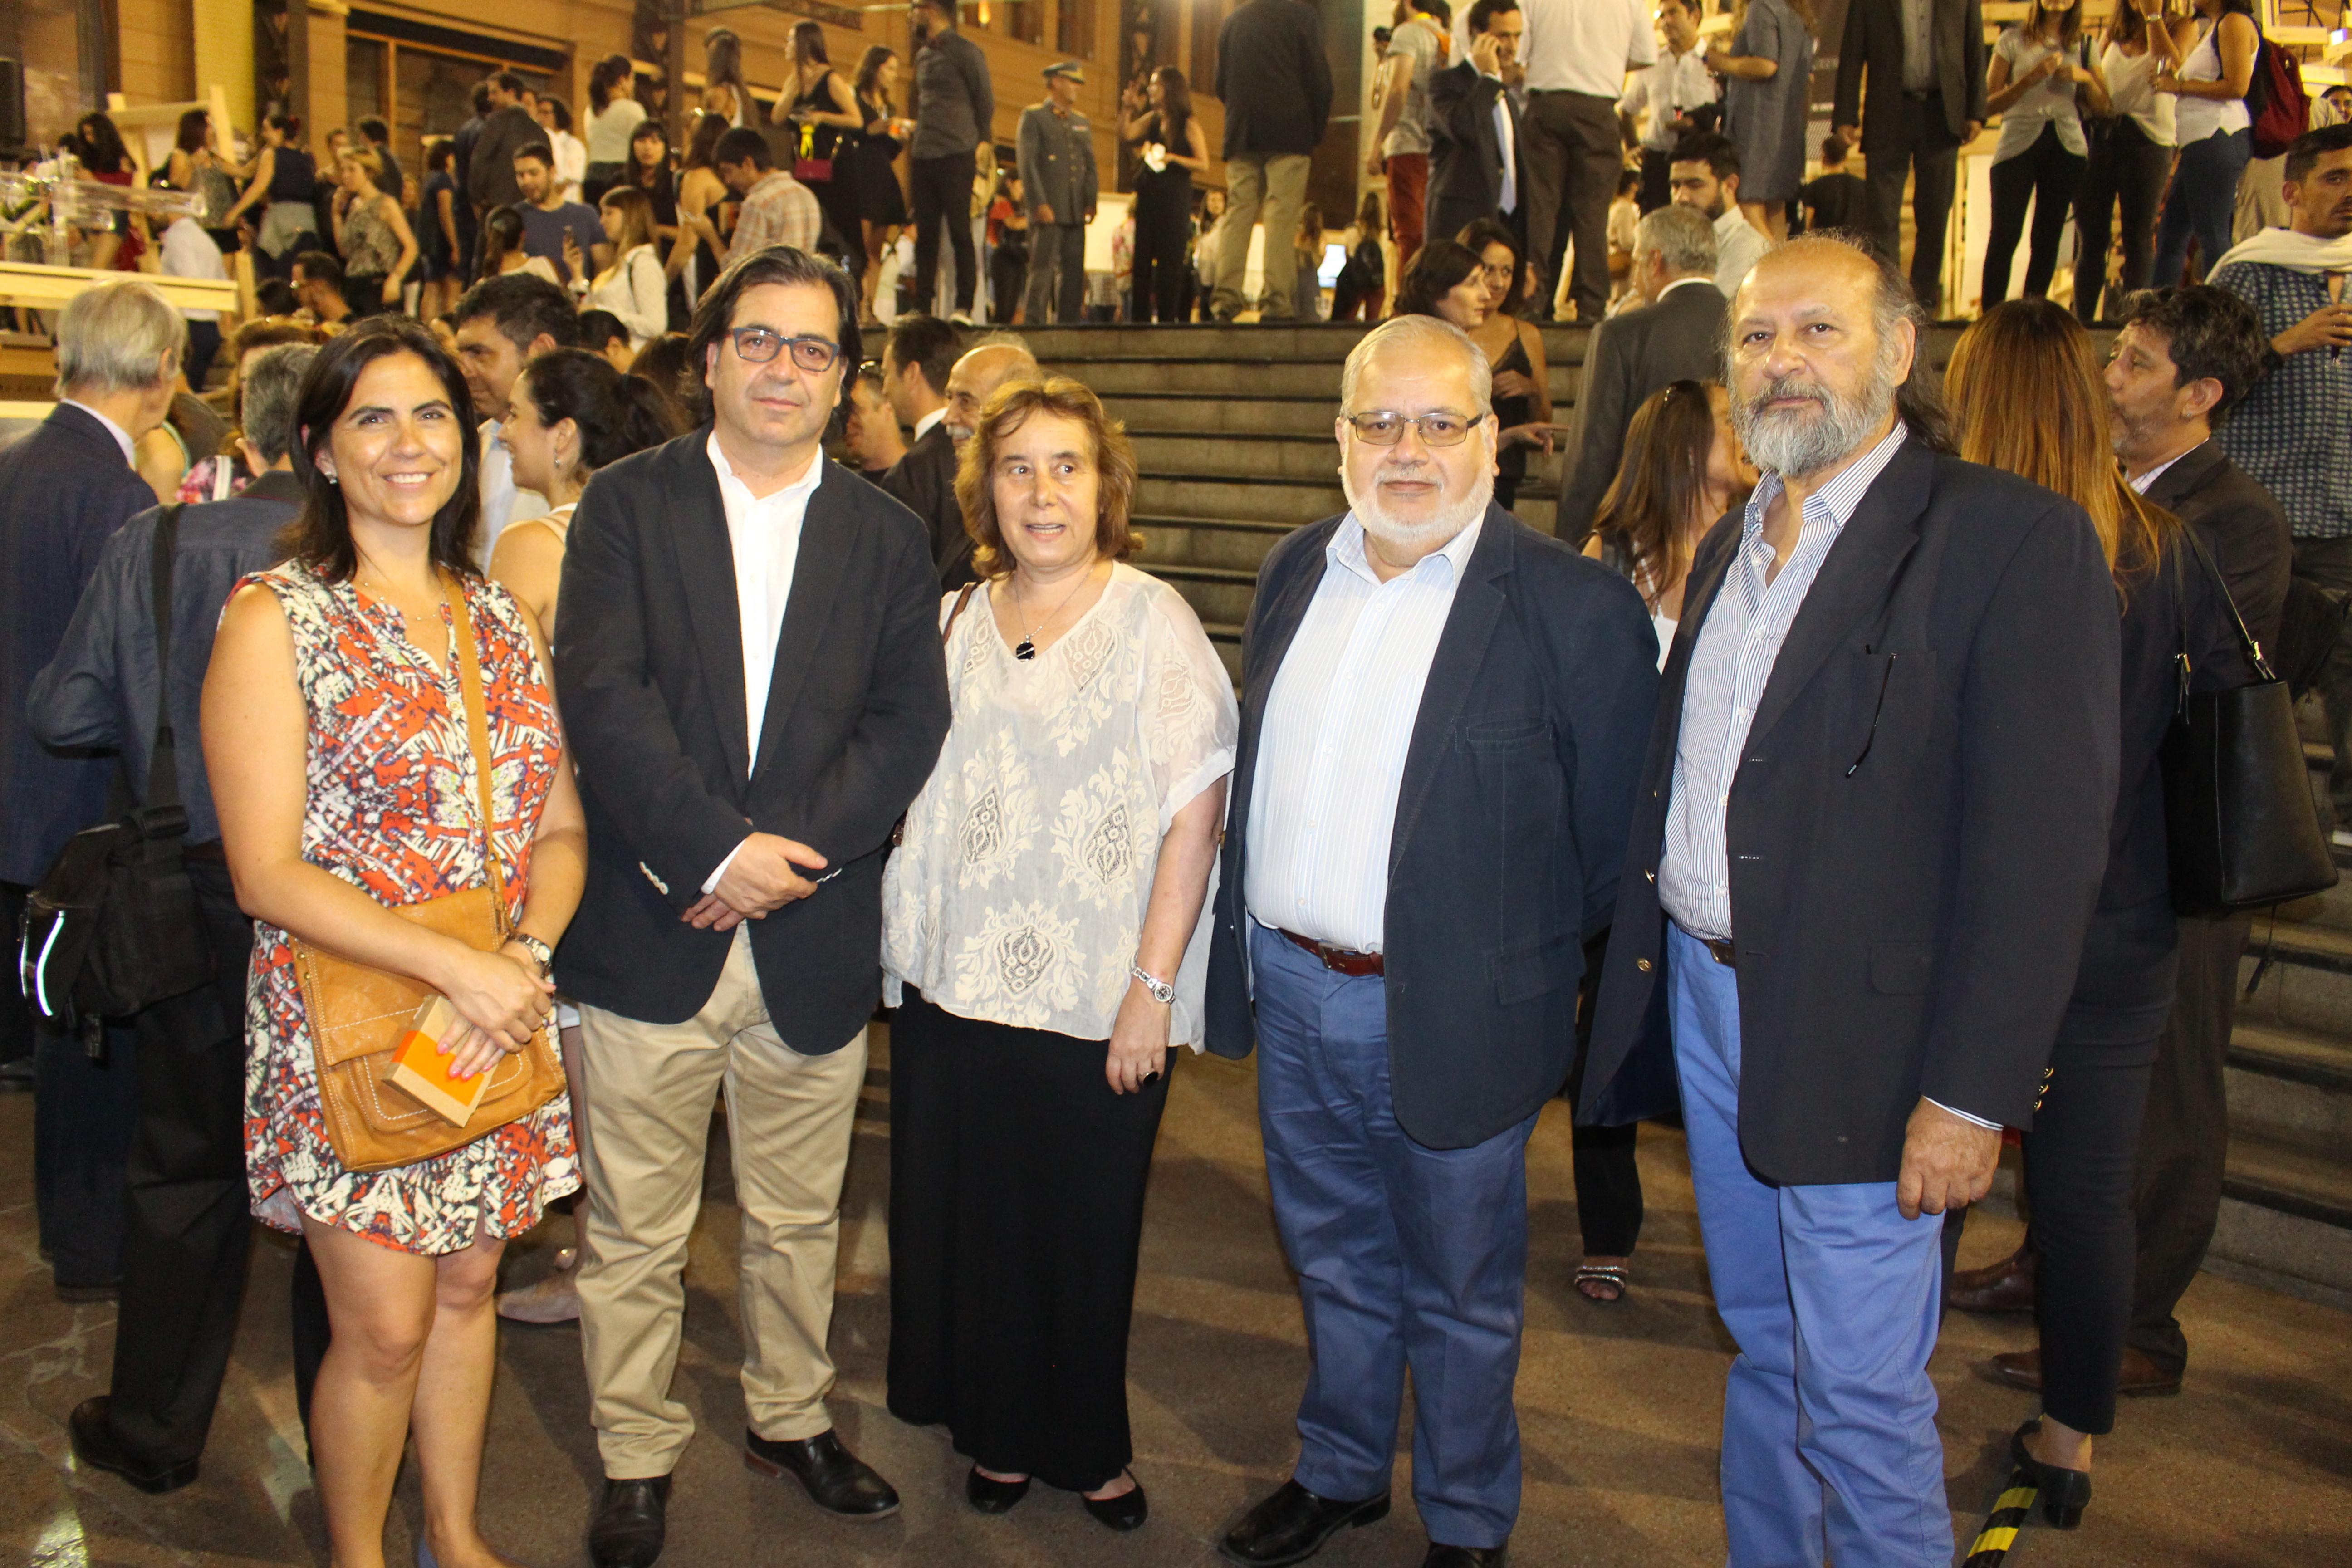 Profesores Andrea Wechsler, Mauricio Vico, Decana Marcela Pizzi y profesores Juan Carlos Lepe y Marcelo Quezada en la inauguración del evento.